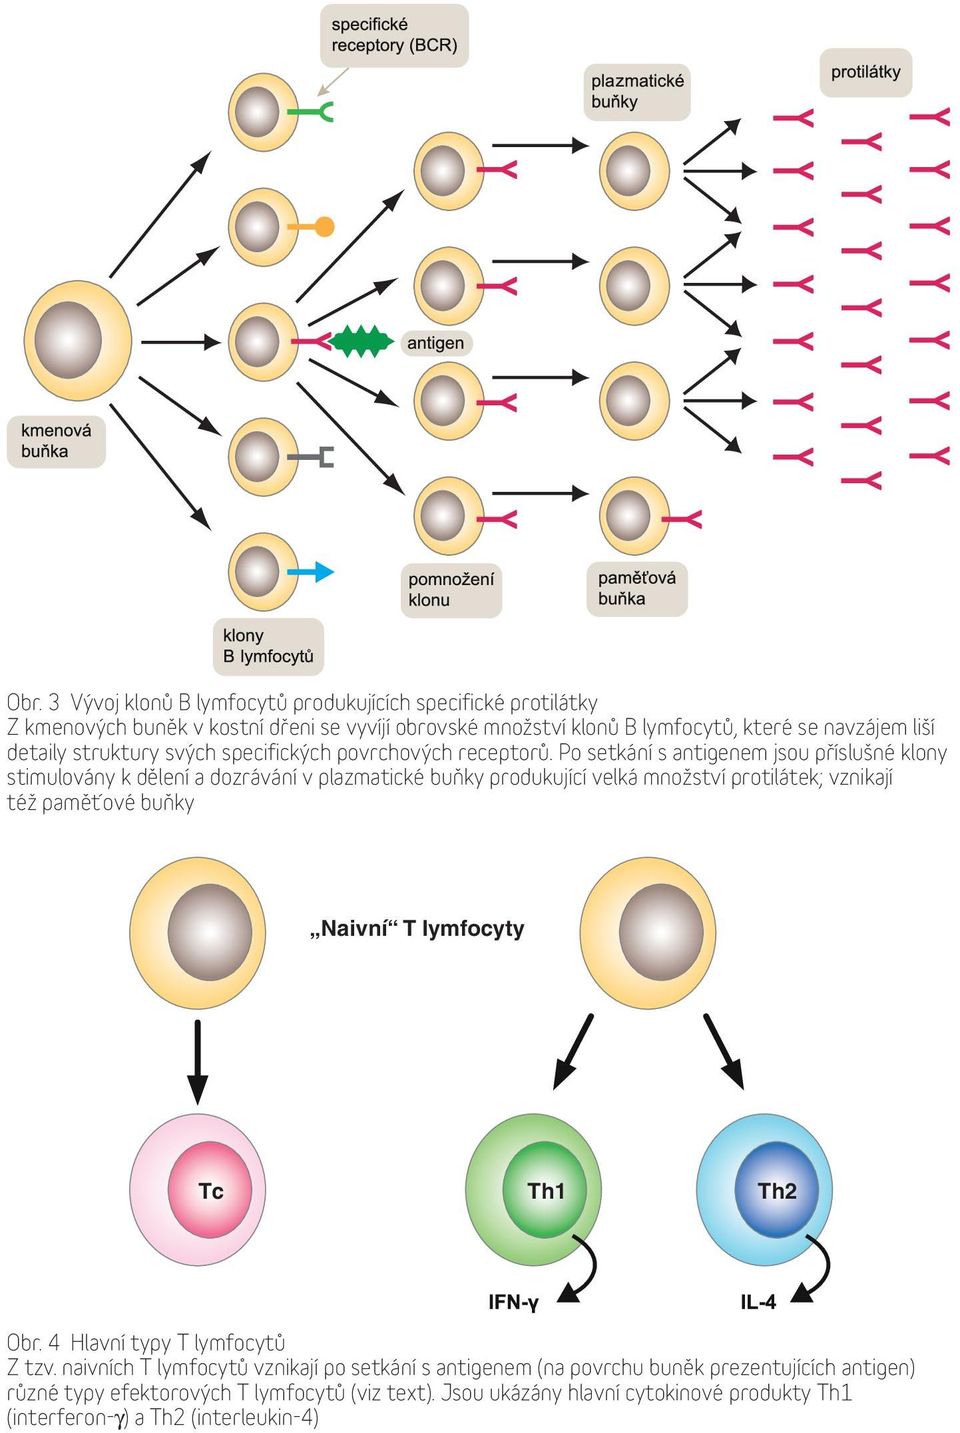 Po setkání s antigenem jsou příslušné klony stimulovány k dělení a dozrávání v plazmatické buňky produkující velká množství protilátek; vznikají též paměťové buňky Naivní